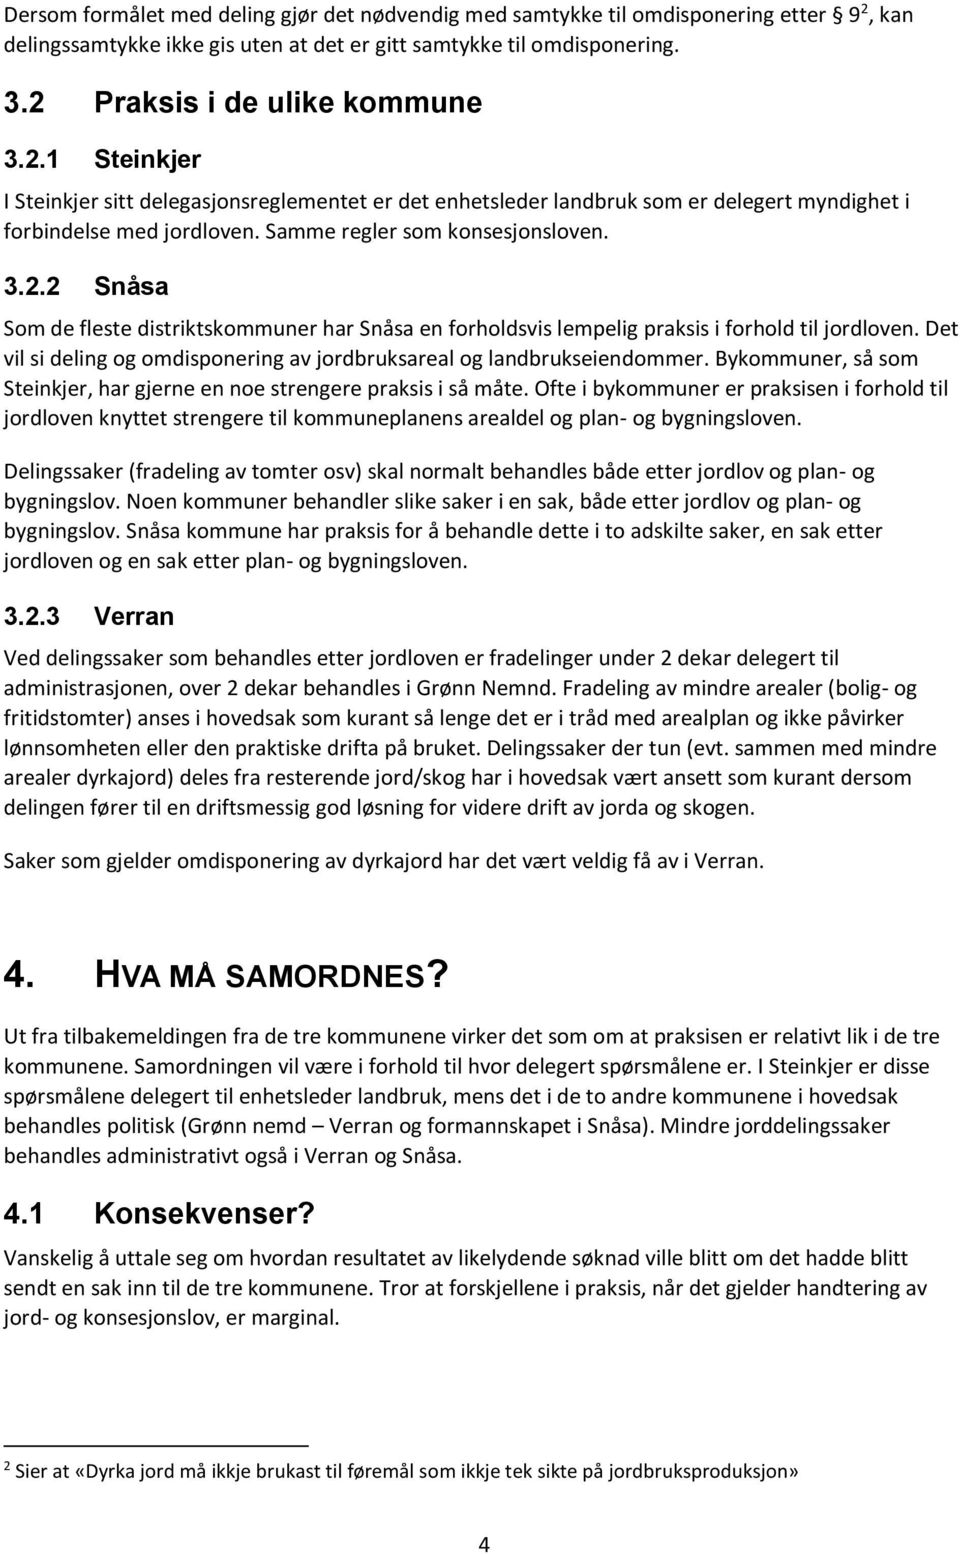 Praksis i de ulike kommune 3.2.1 Steinkjer I Steinkjer sitt delegasjonsreglementet er det enhetsleder landbruk som er delegert myndighet i forbindelse med jordloven. Samme regler som konsesjonsloven.